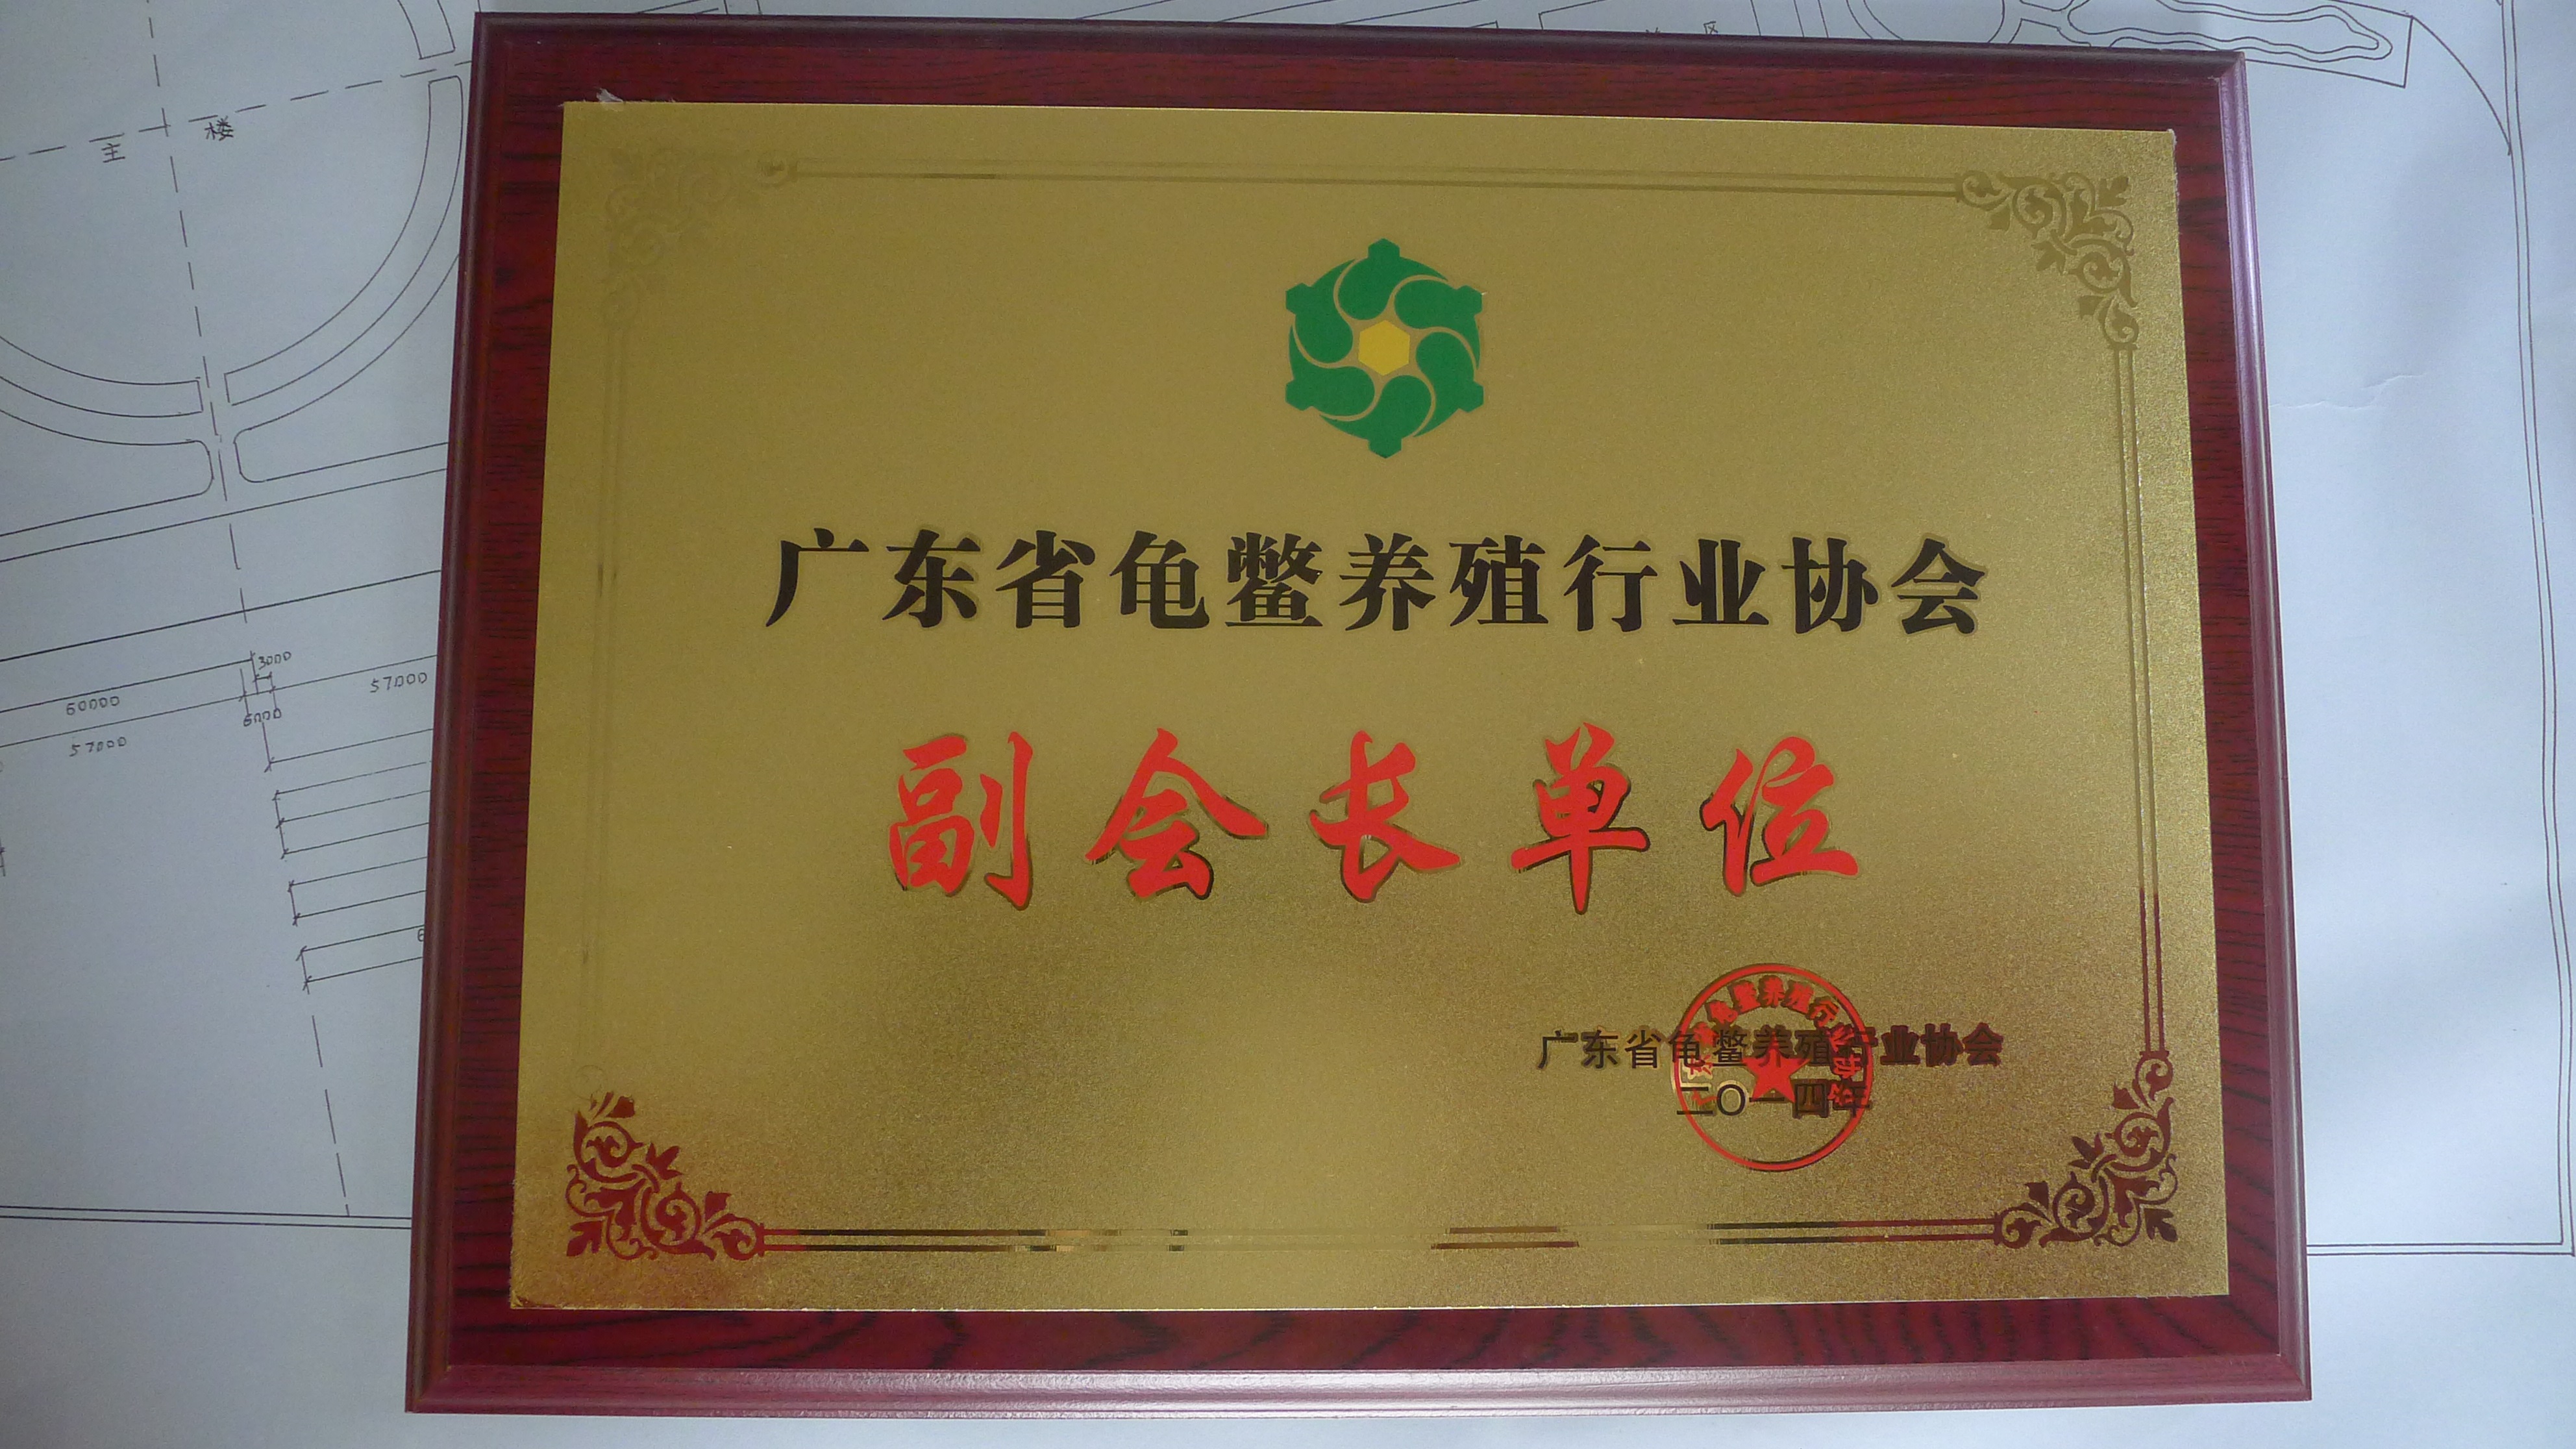 广东省龟鳖养殖行业协会副会长单位牌匾